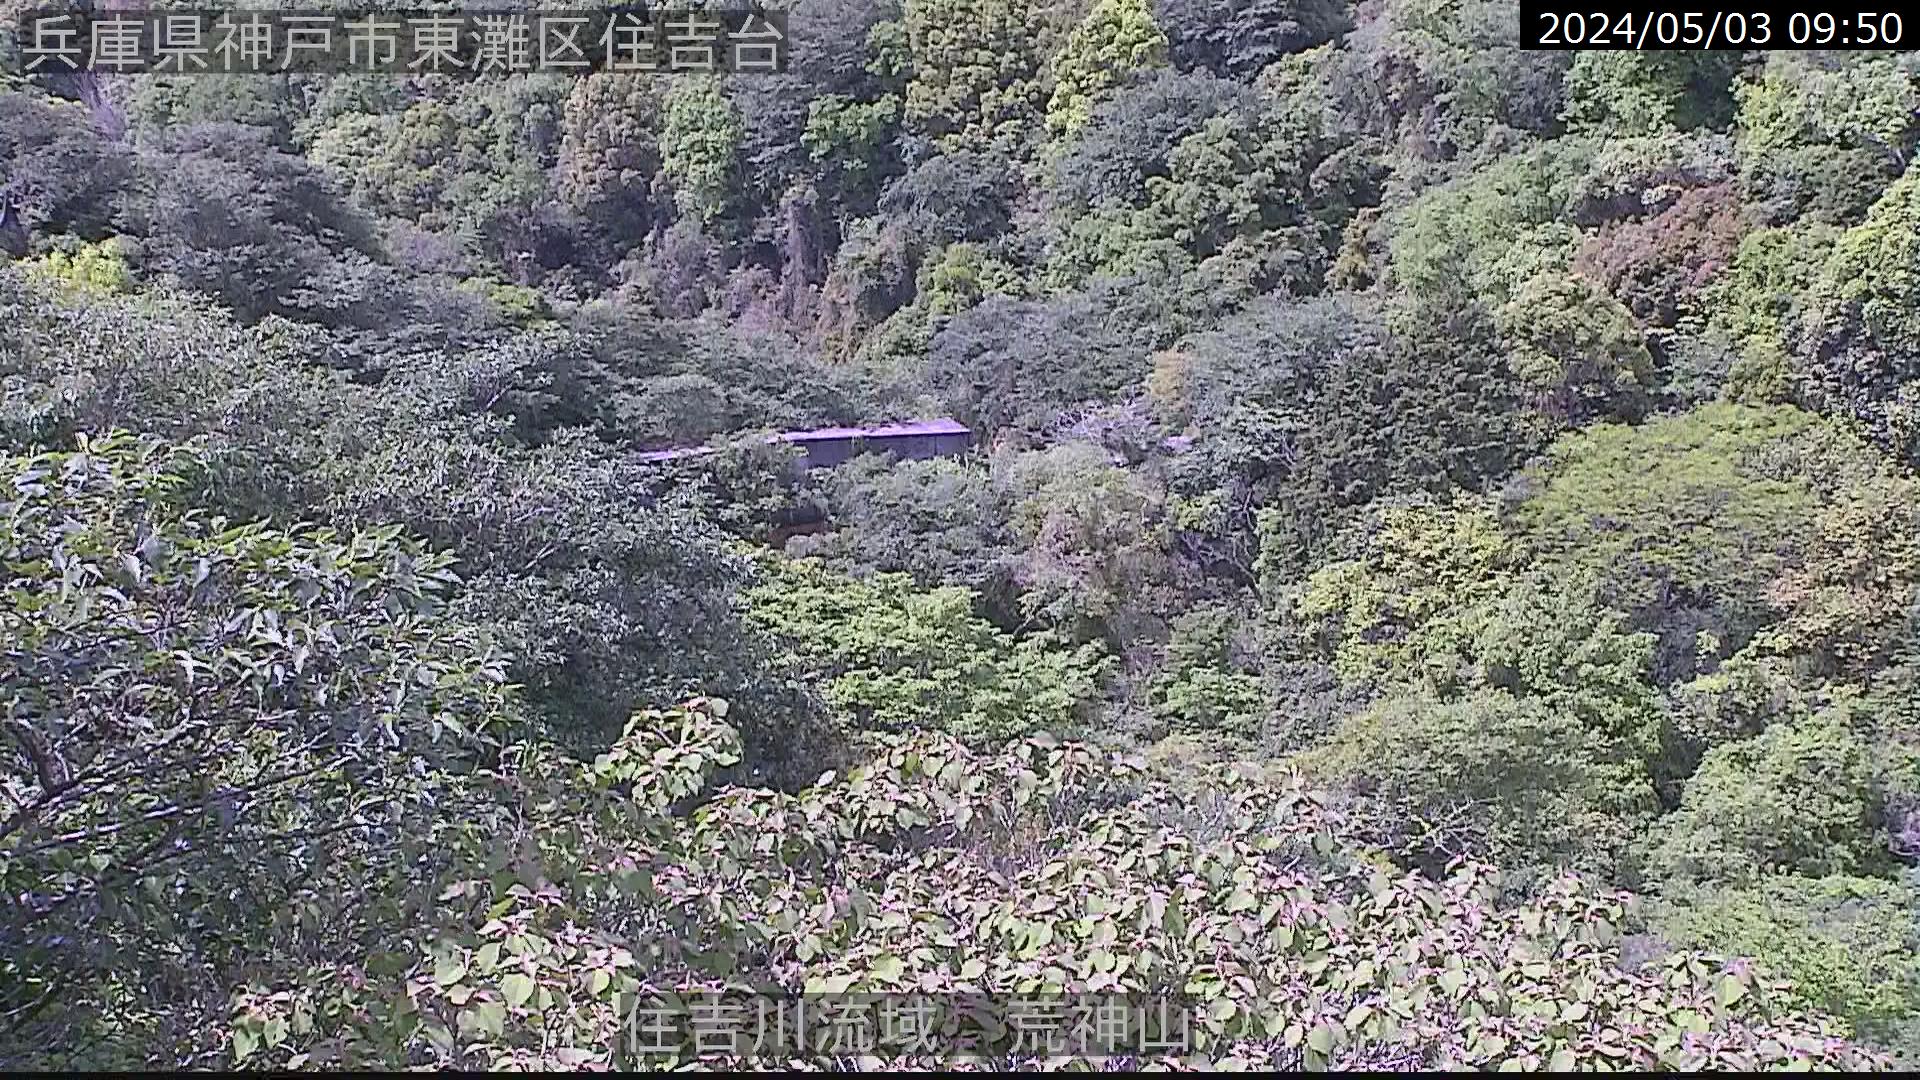 兵庫県の山ライブカメラ｢六甲山 荒神山｣のライブ画像